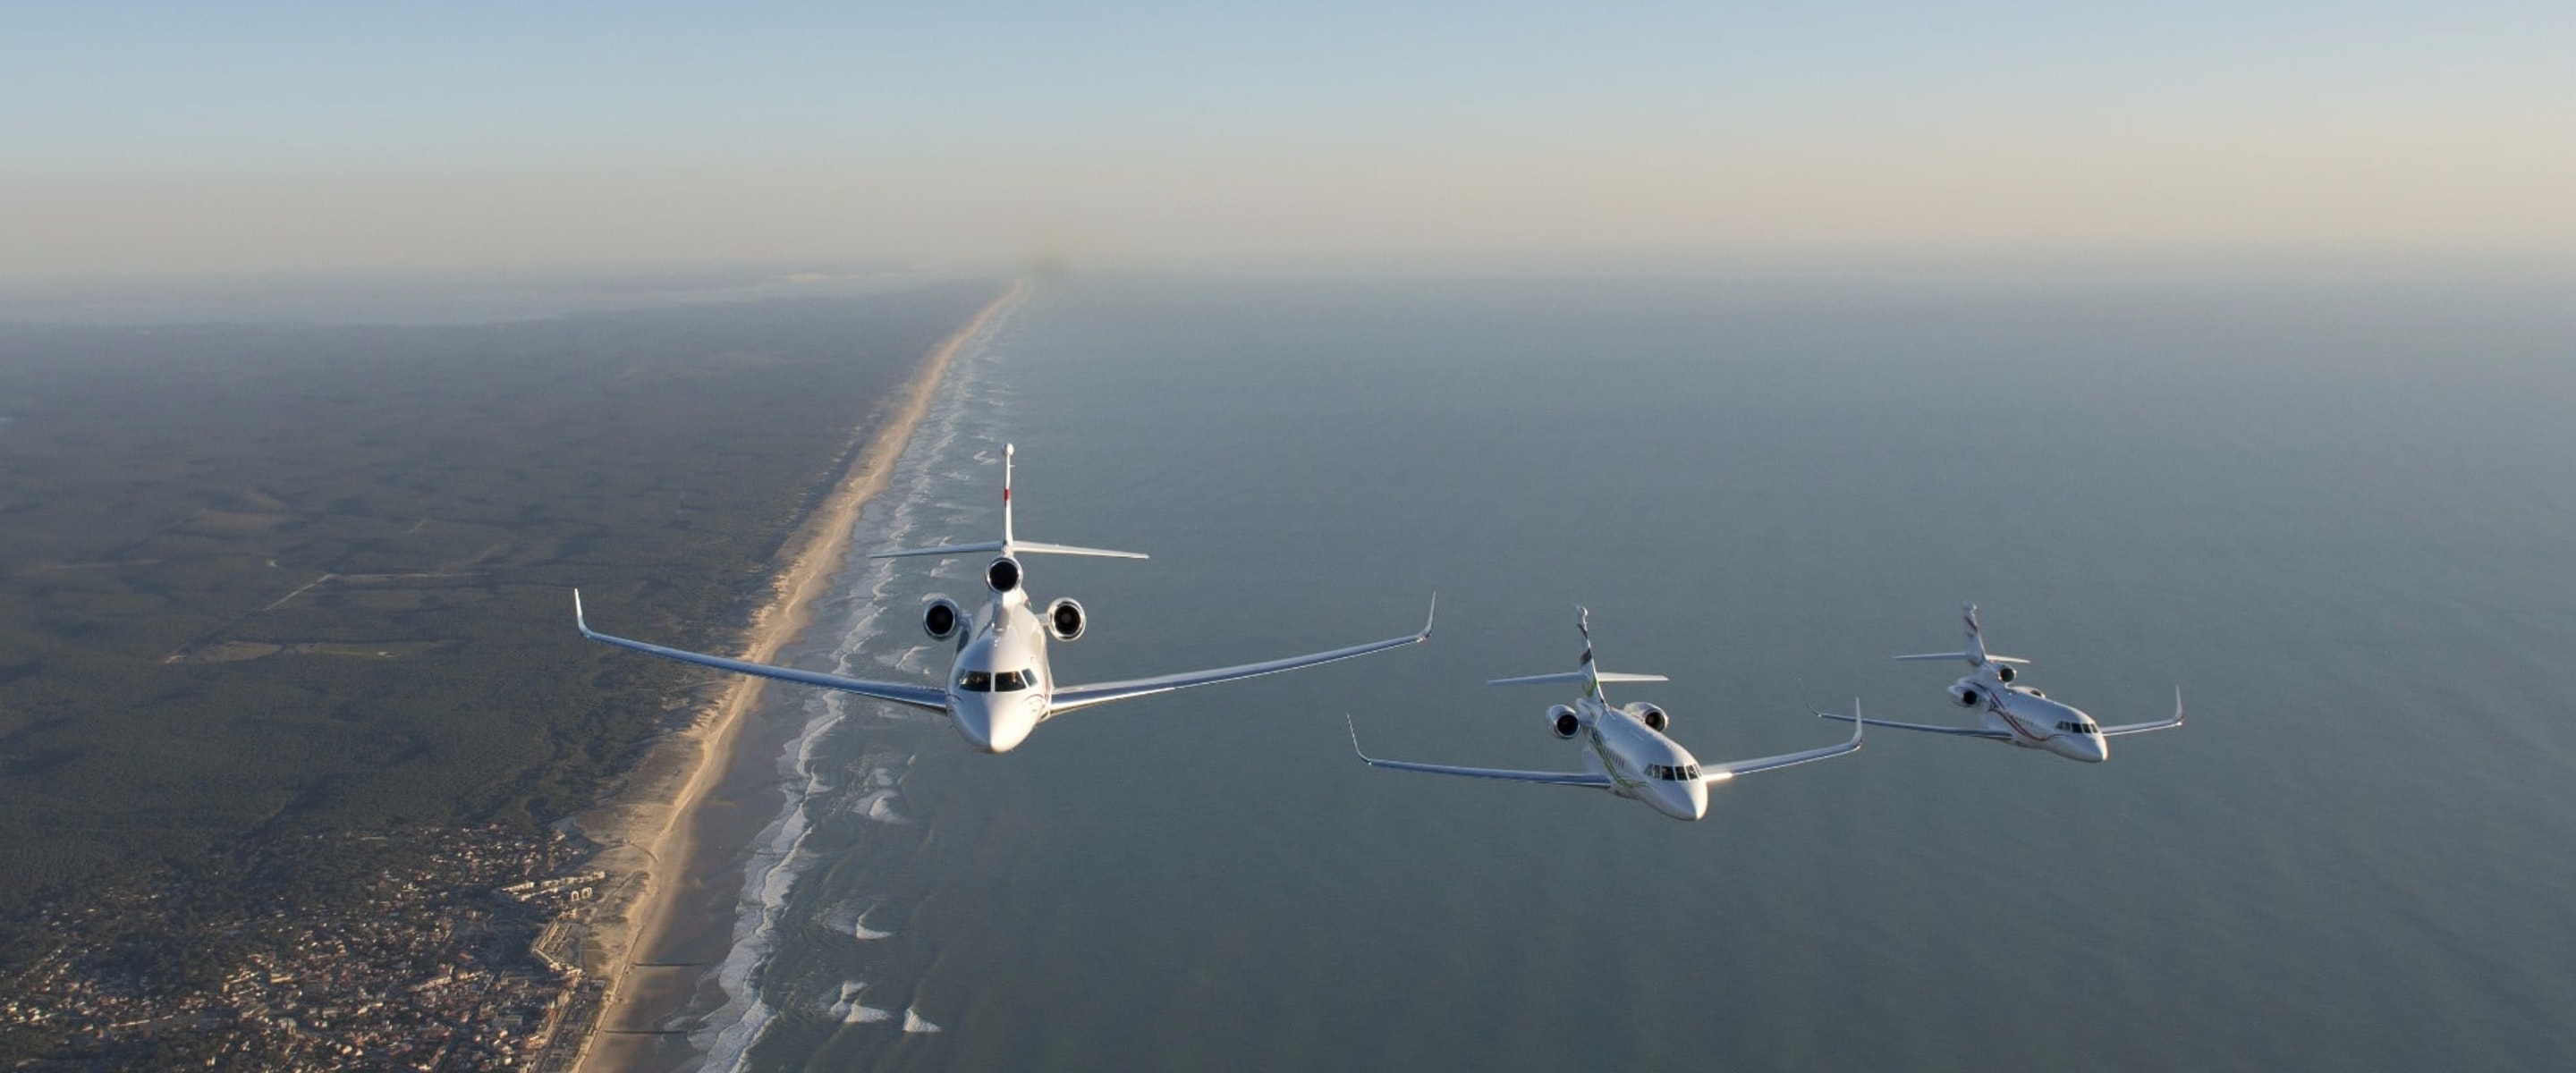 Falcon 2000S, Falcon 7X and Falcon 900LX in flight.